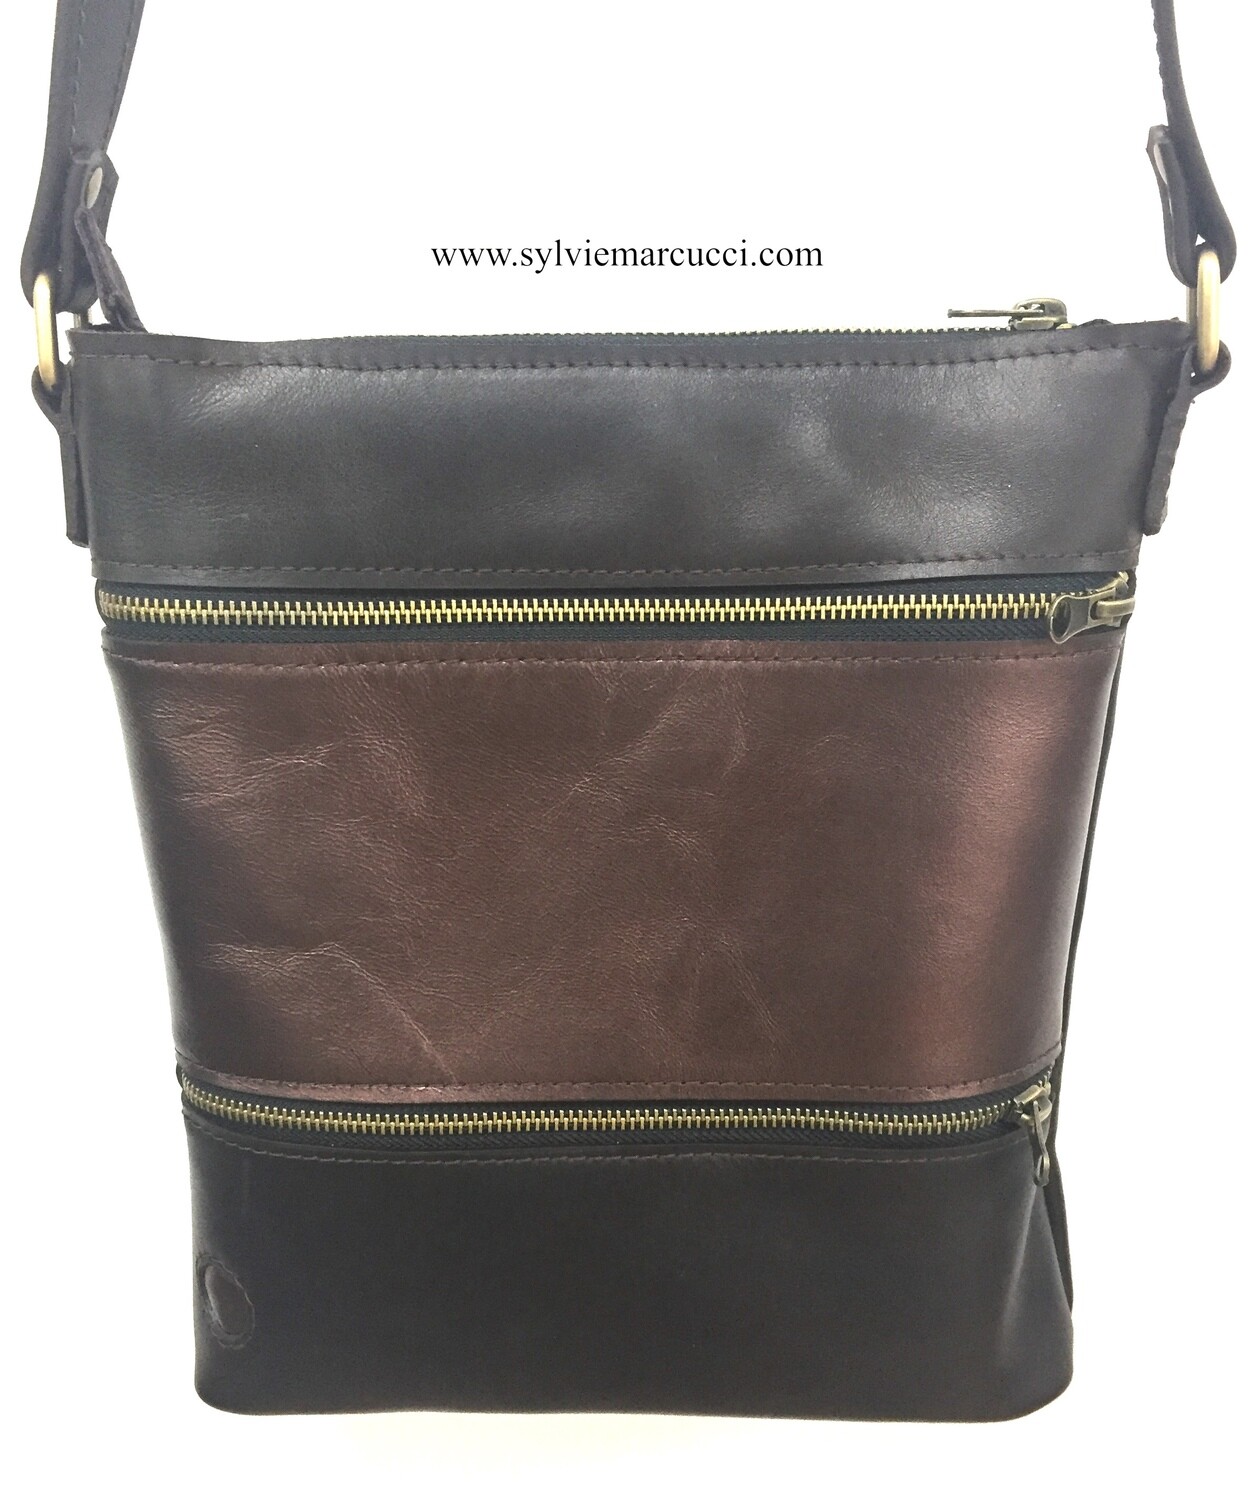 Zippeur sac BI cuir de vachette multi poches de couleur marron glacé et cuivre, porté épaule ou bandoulière